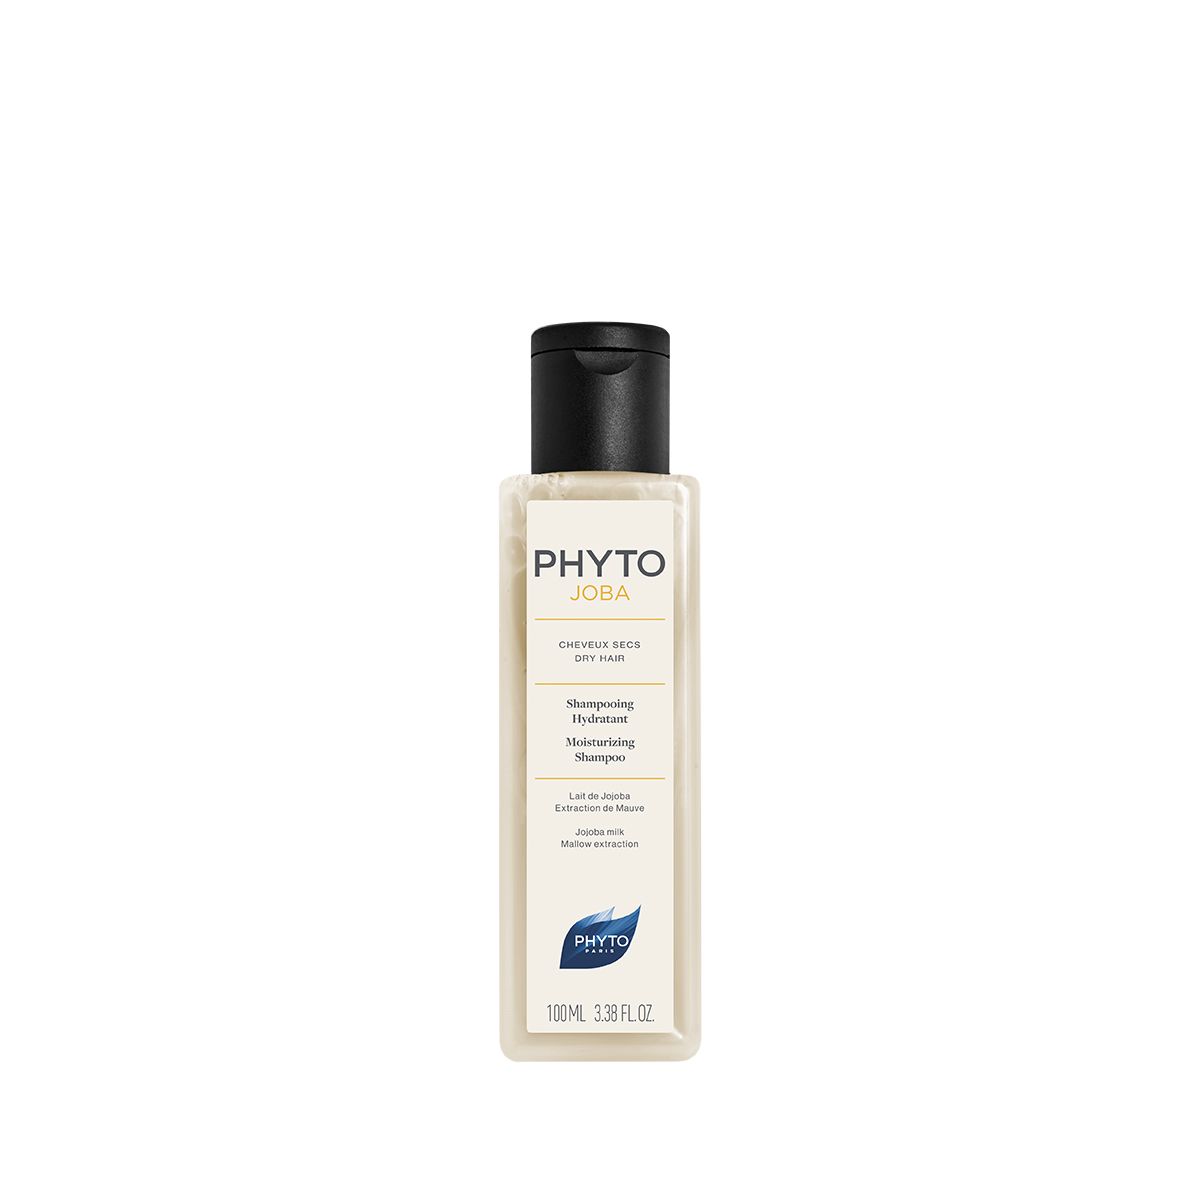 PHYTOJOBA Shampooing Hydratant 100ml